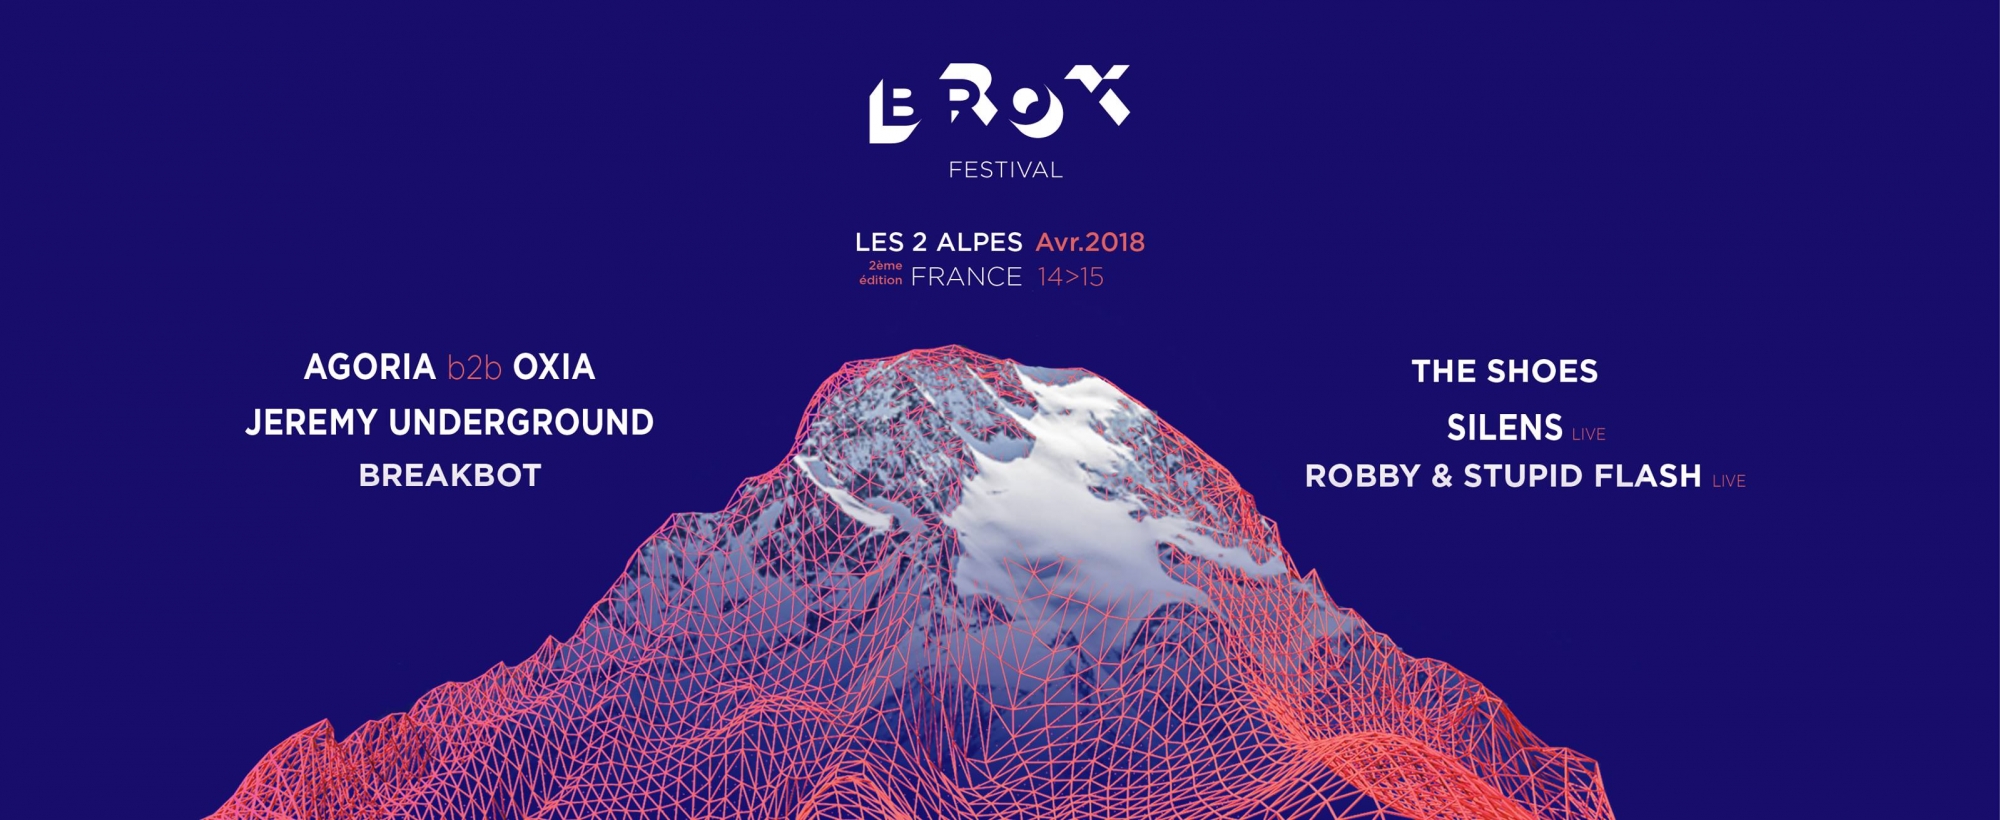 Brox Festival, du 14 au 16 avril 2018 aux Deux Alpes - Photo 3